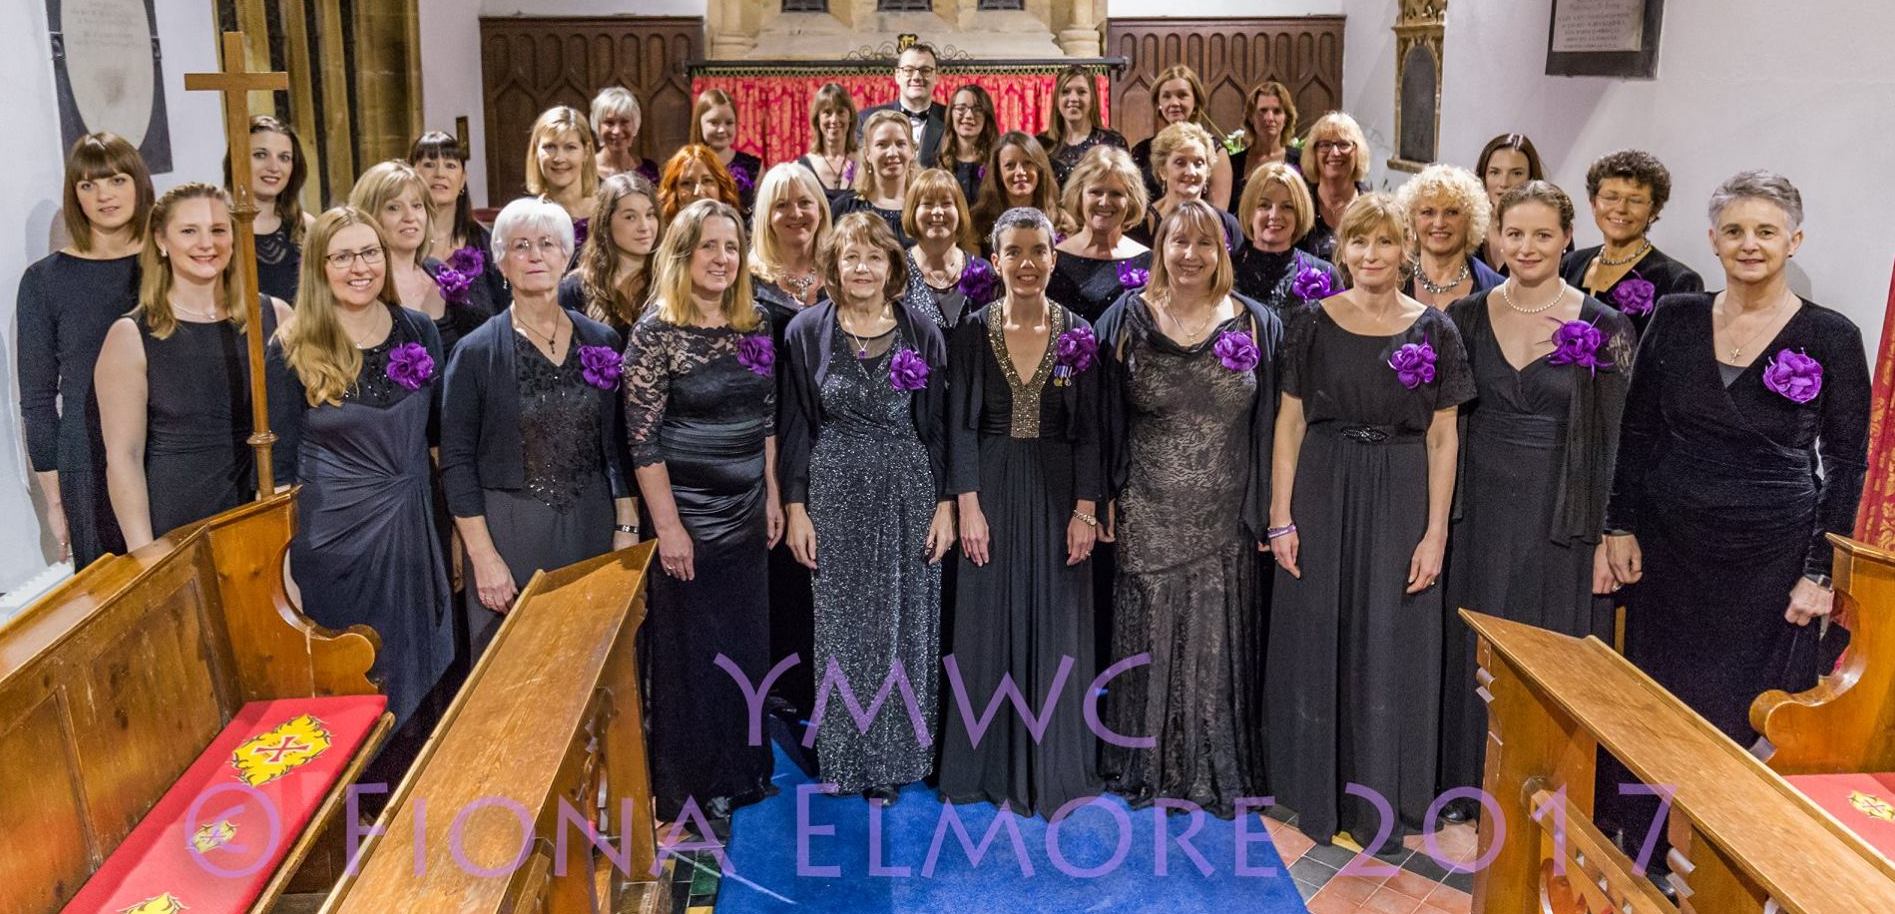 Military Wives Choir photo